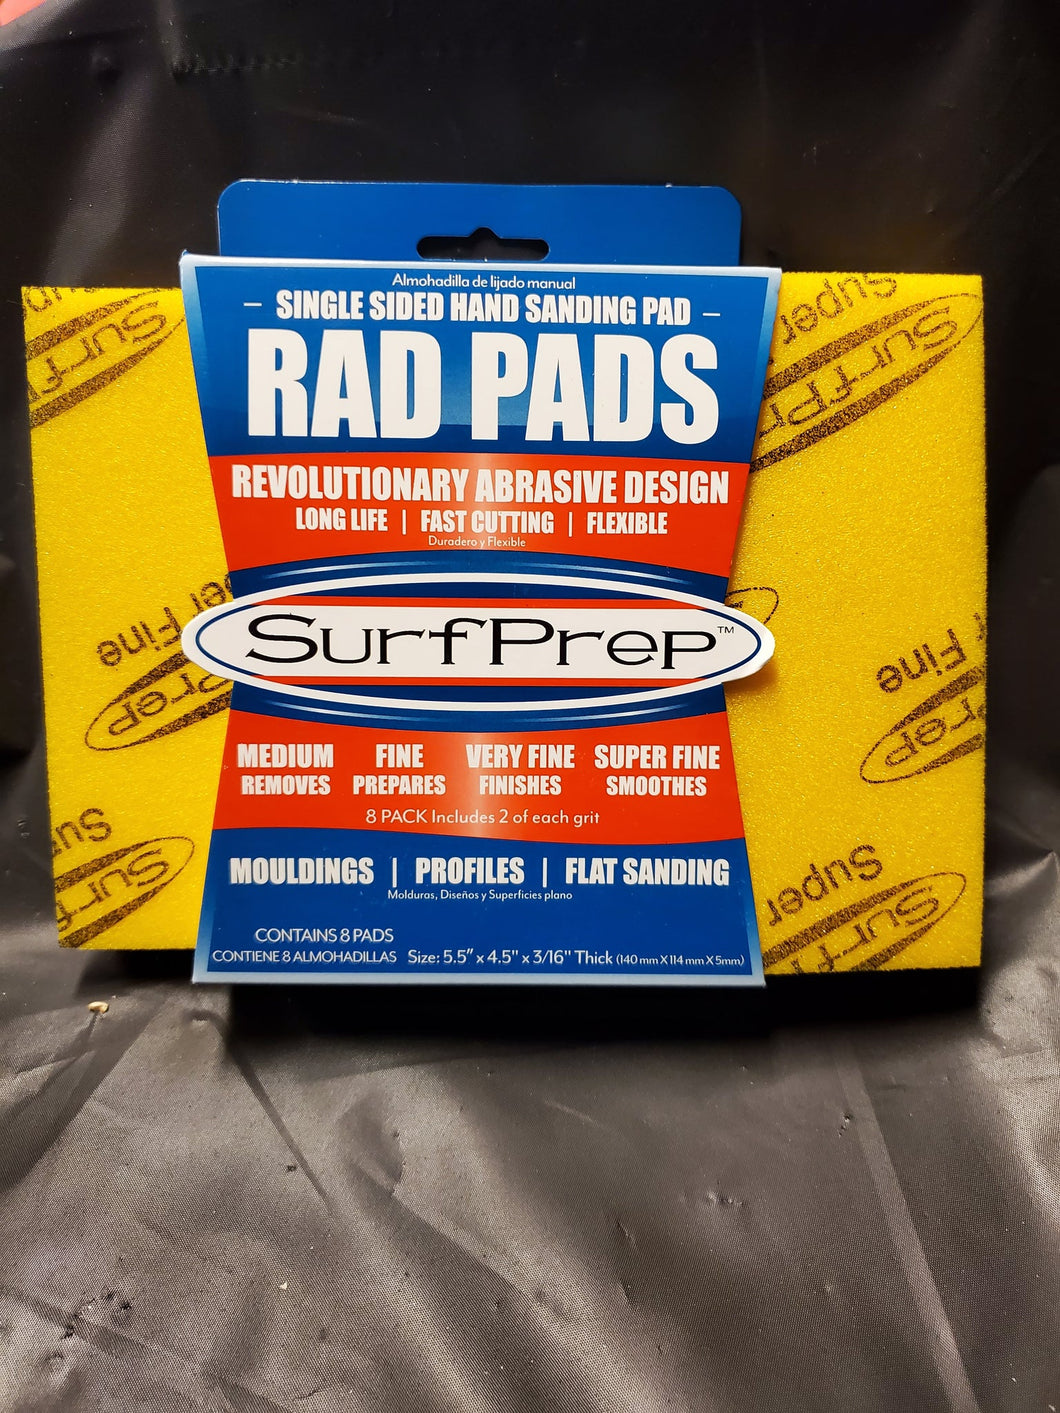 Super Fine SurfPrep Rad Pads